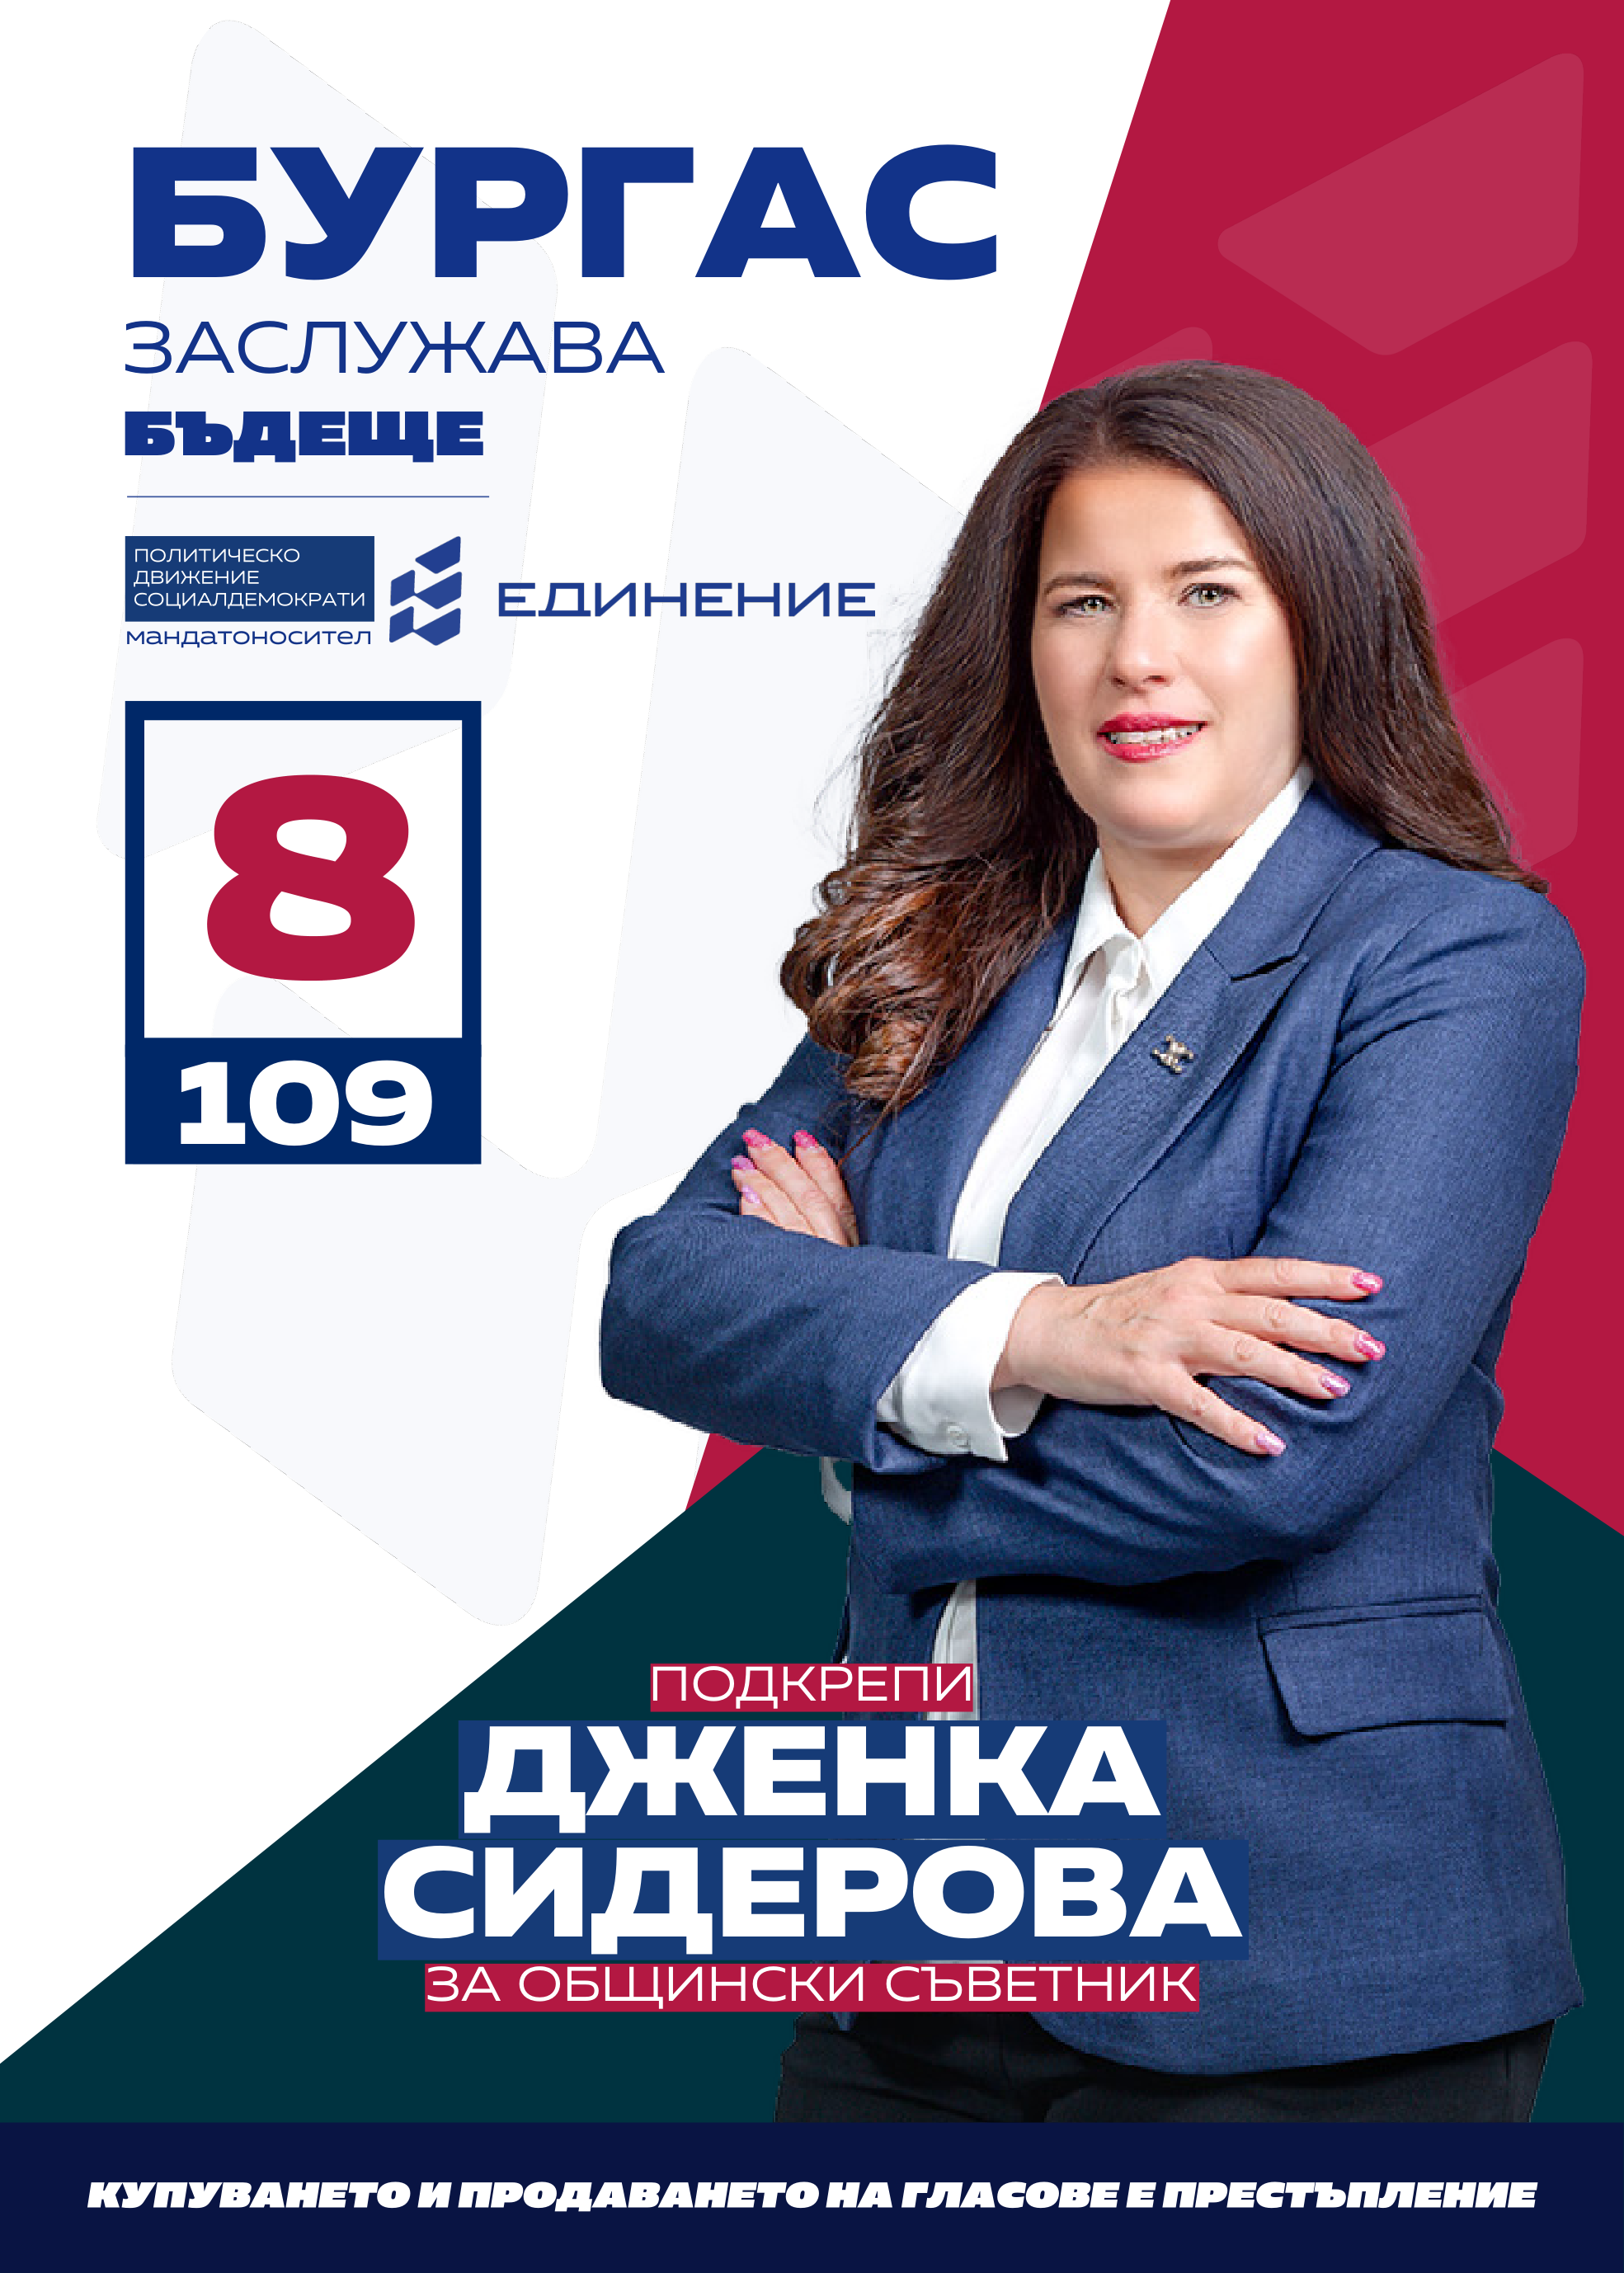 Дженка Сидерова – счетоводител
Кандидатът за общински съветник от ПП Единение“